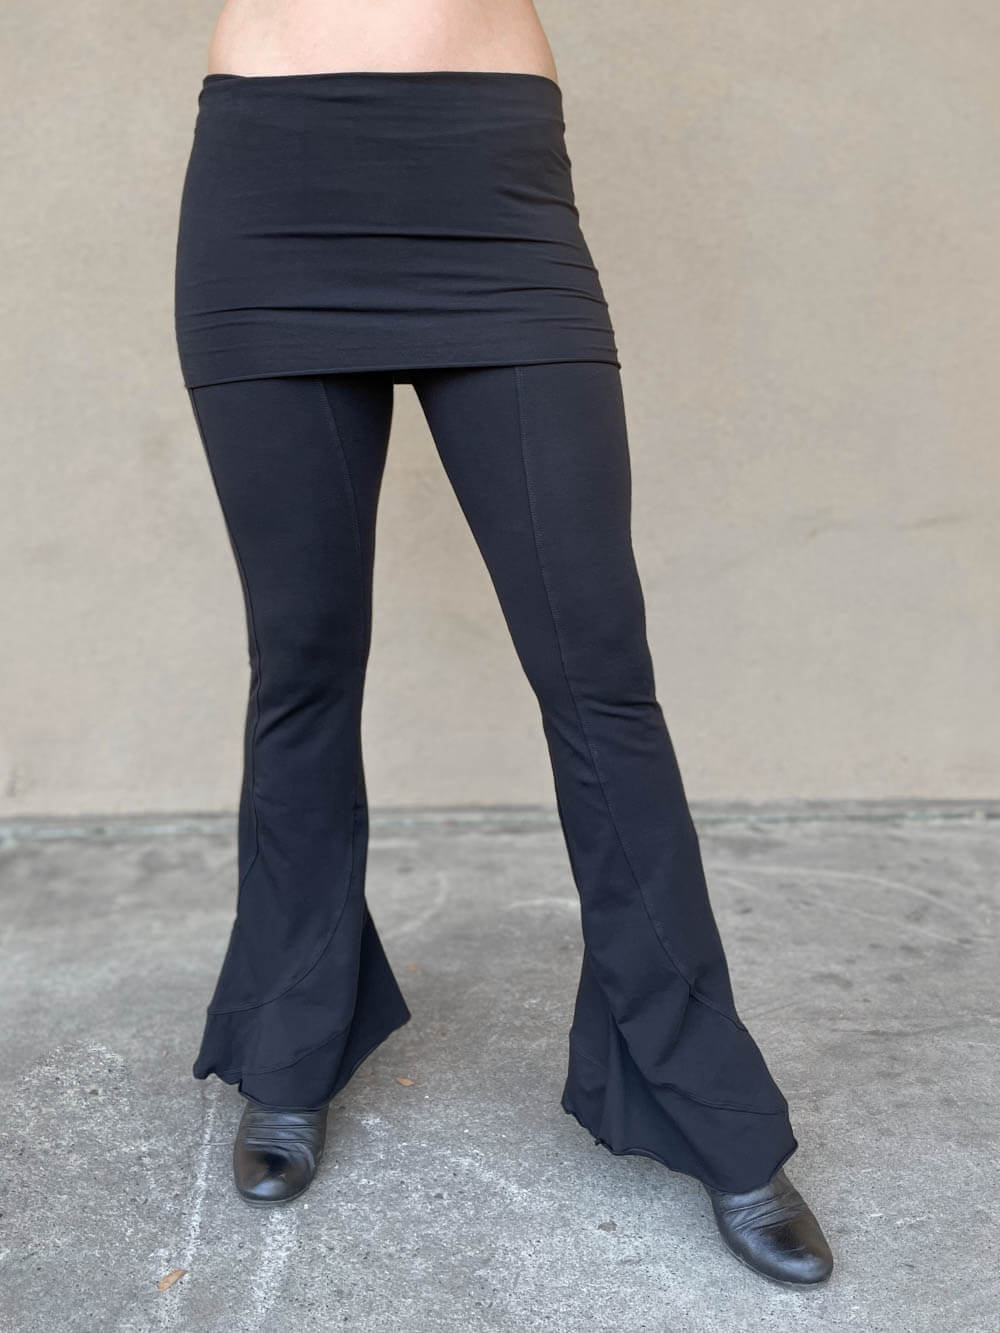 Skirted Legging for Women Yoga Pants Athletic Tennis Golf Skirts Active  Skort | eBay